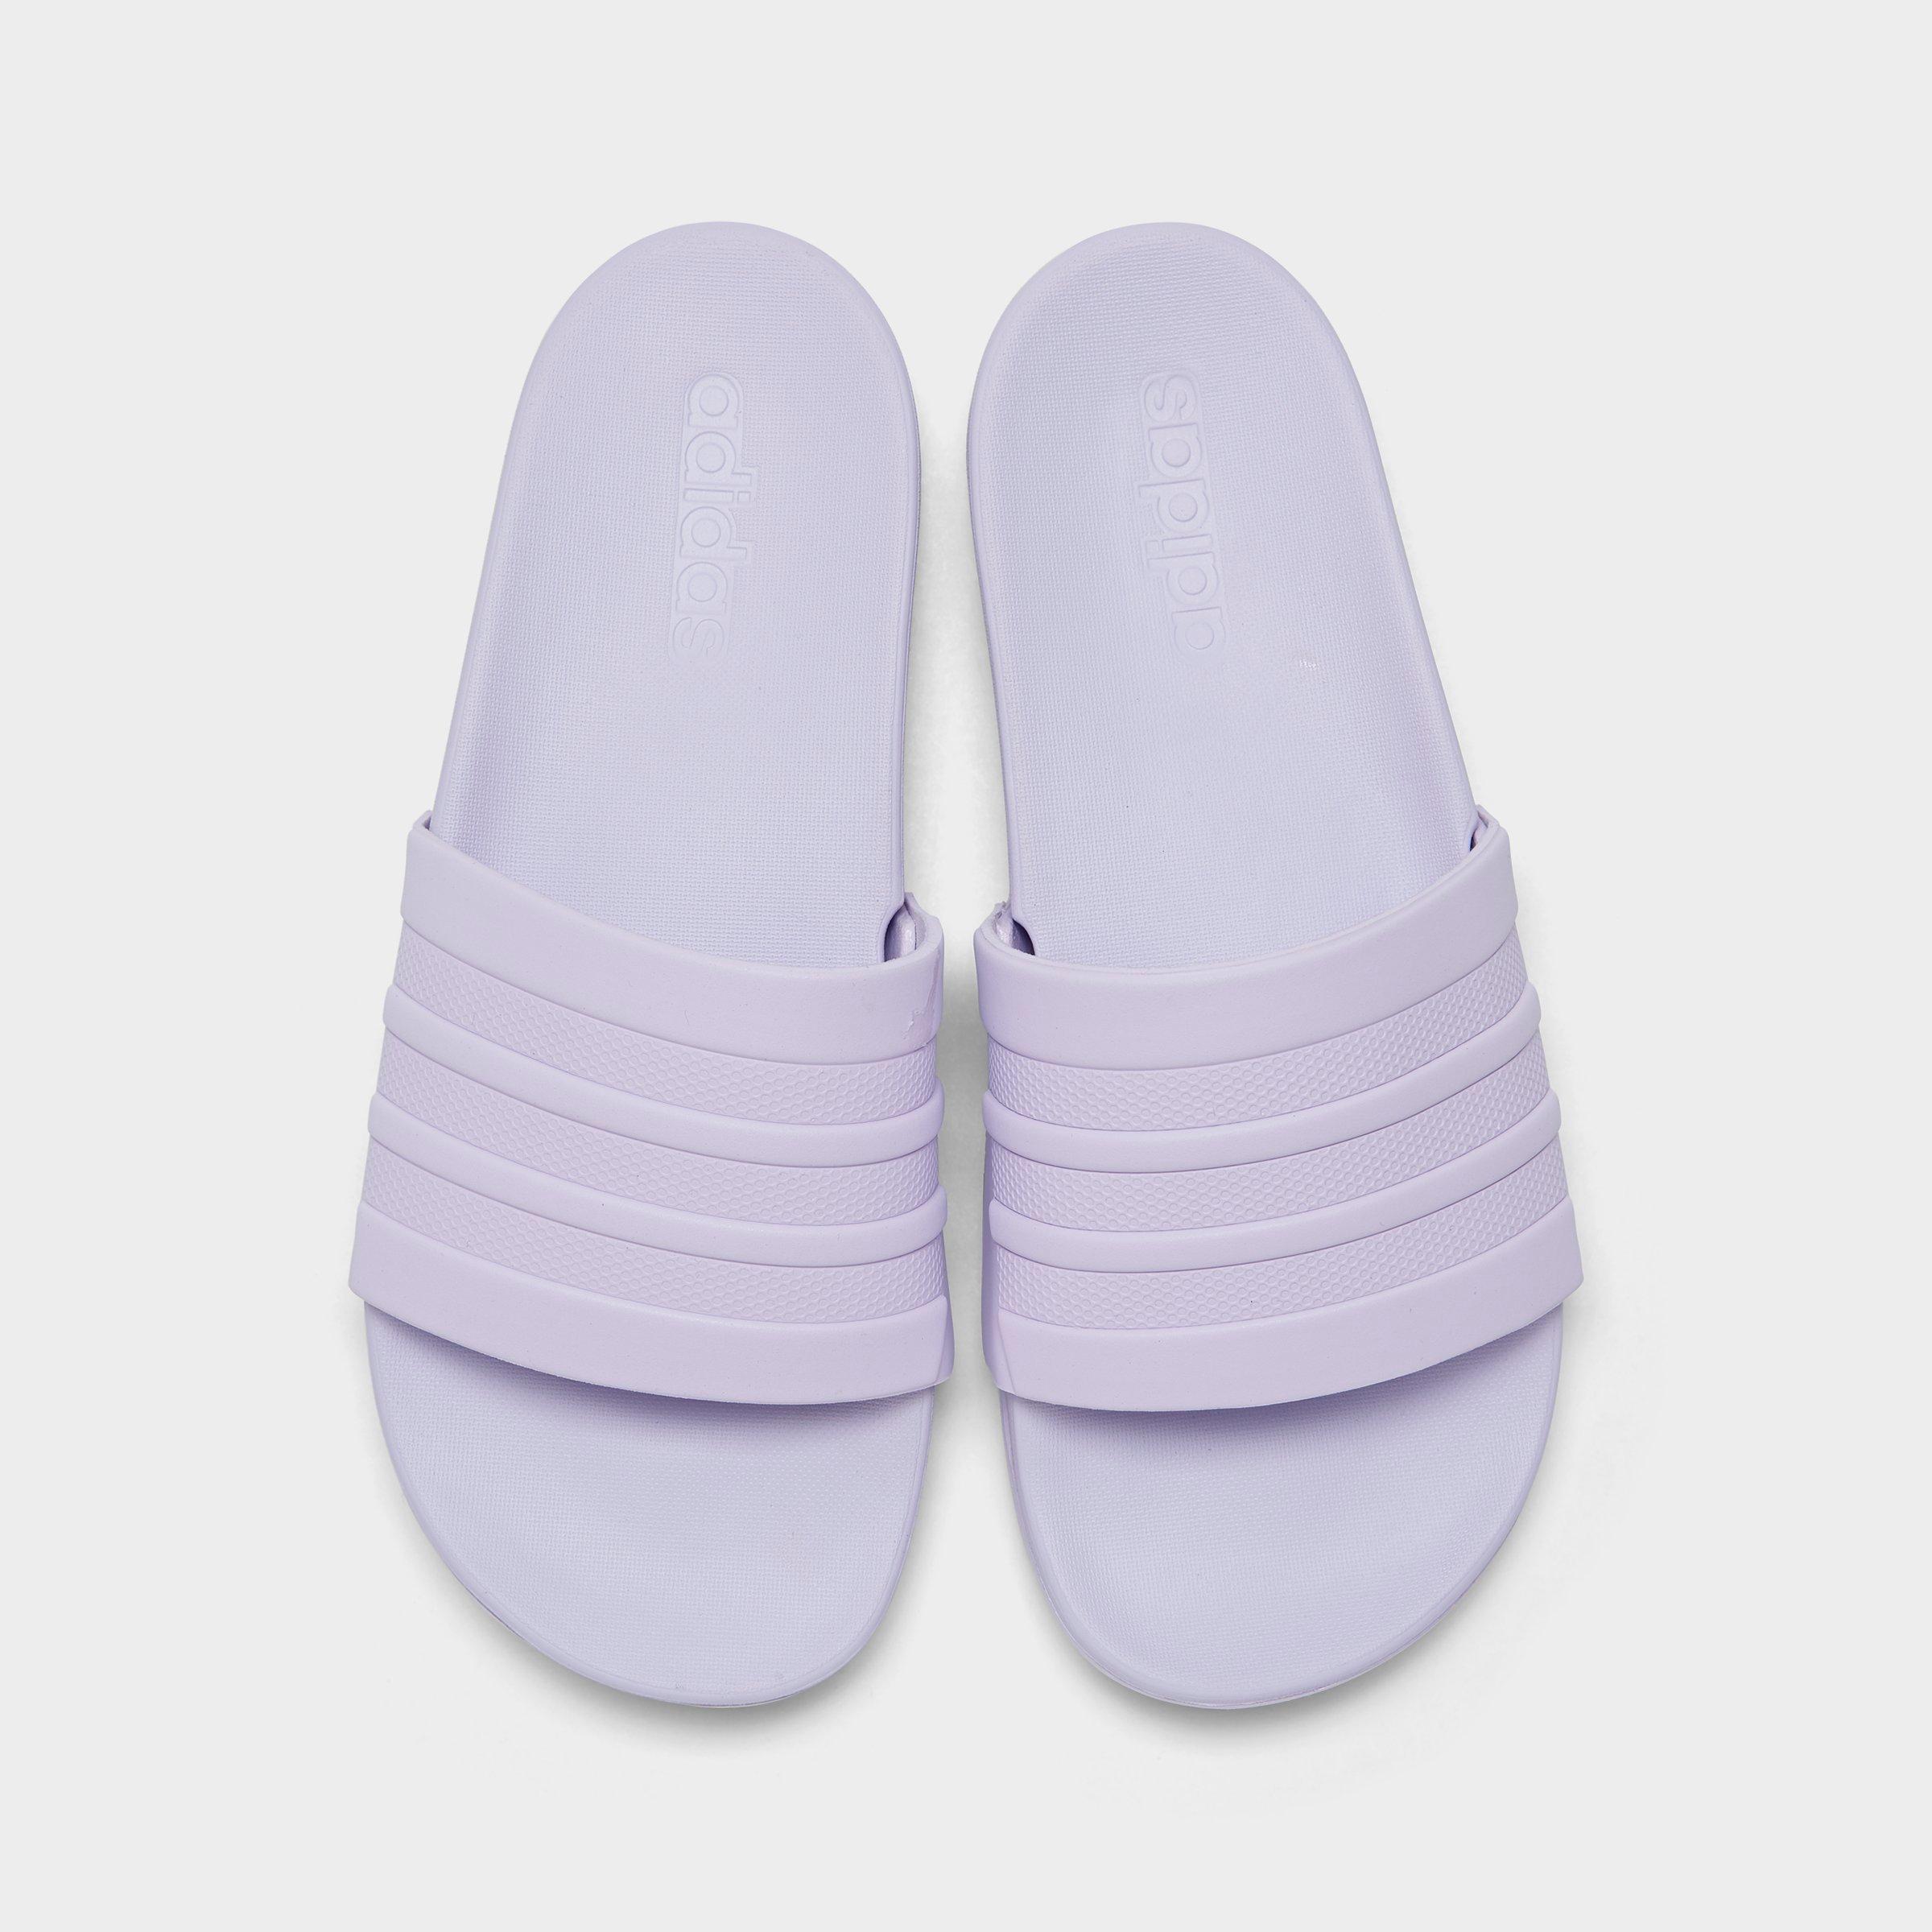 adilette slides purple